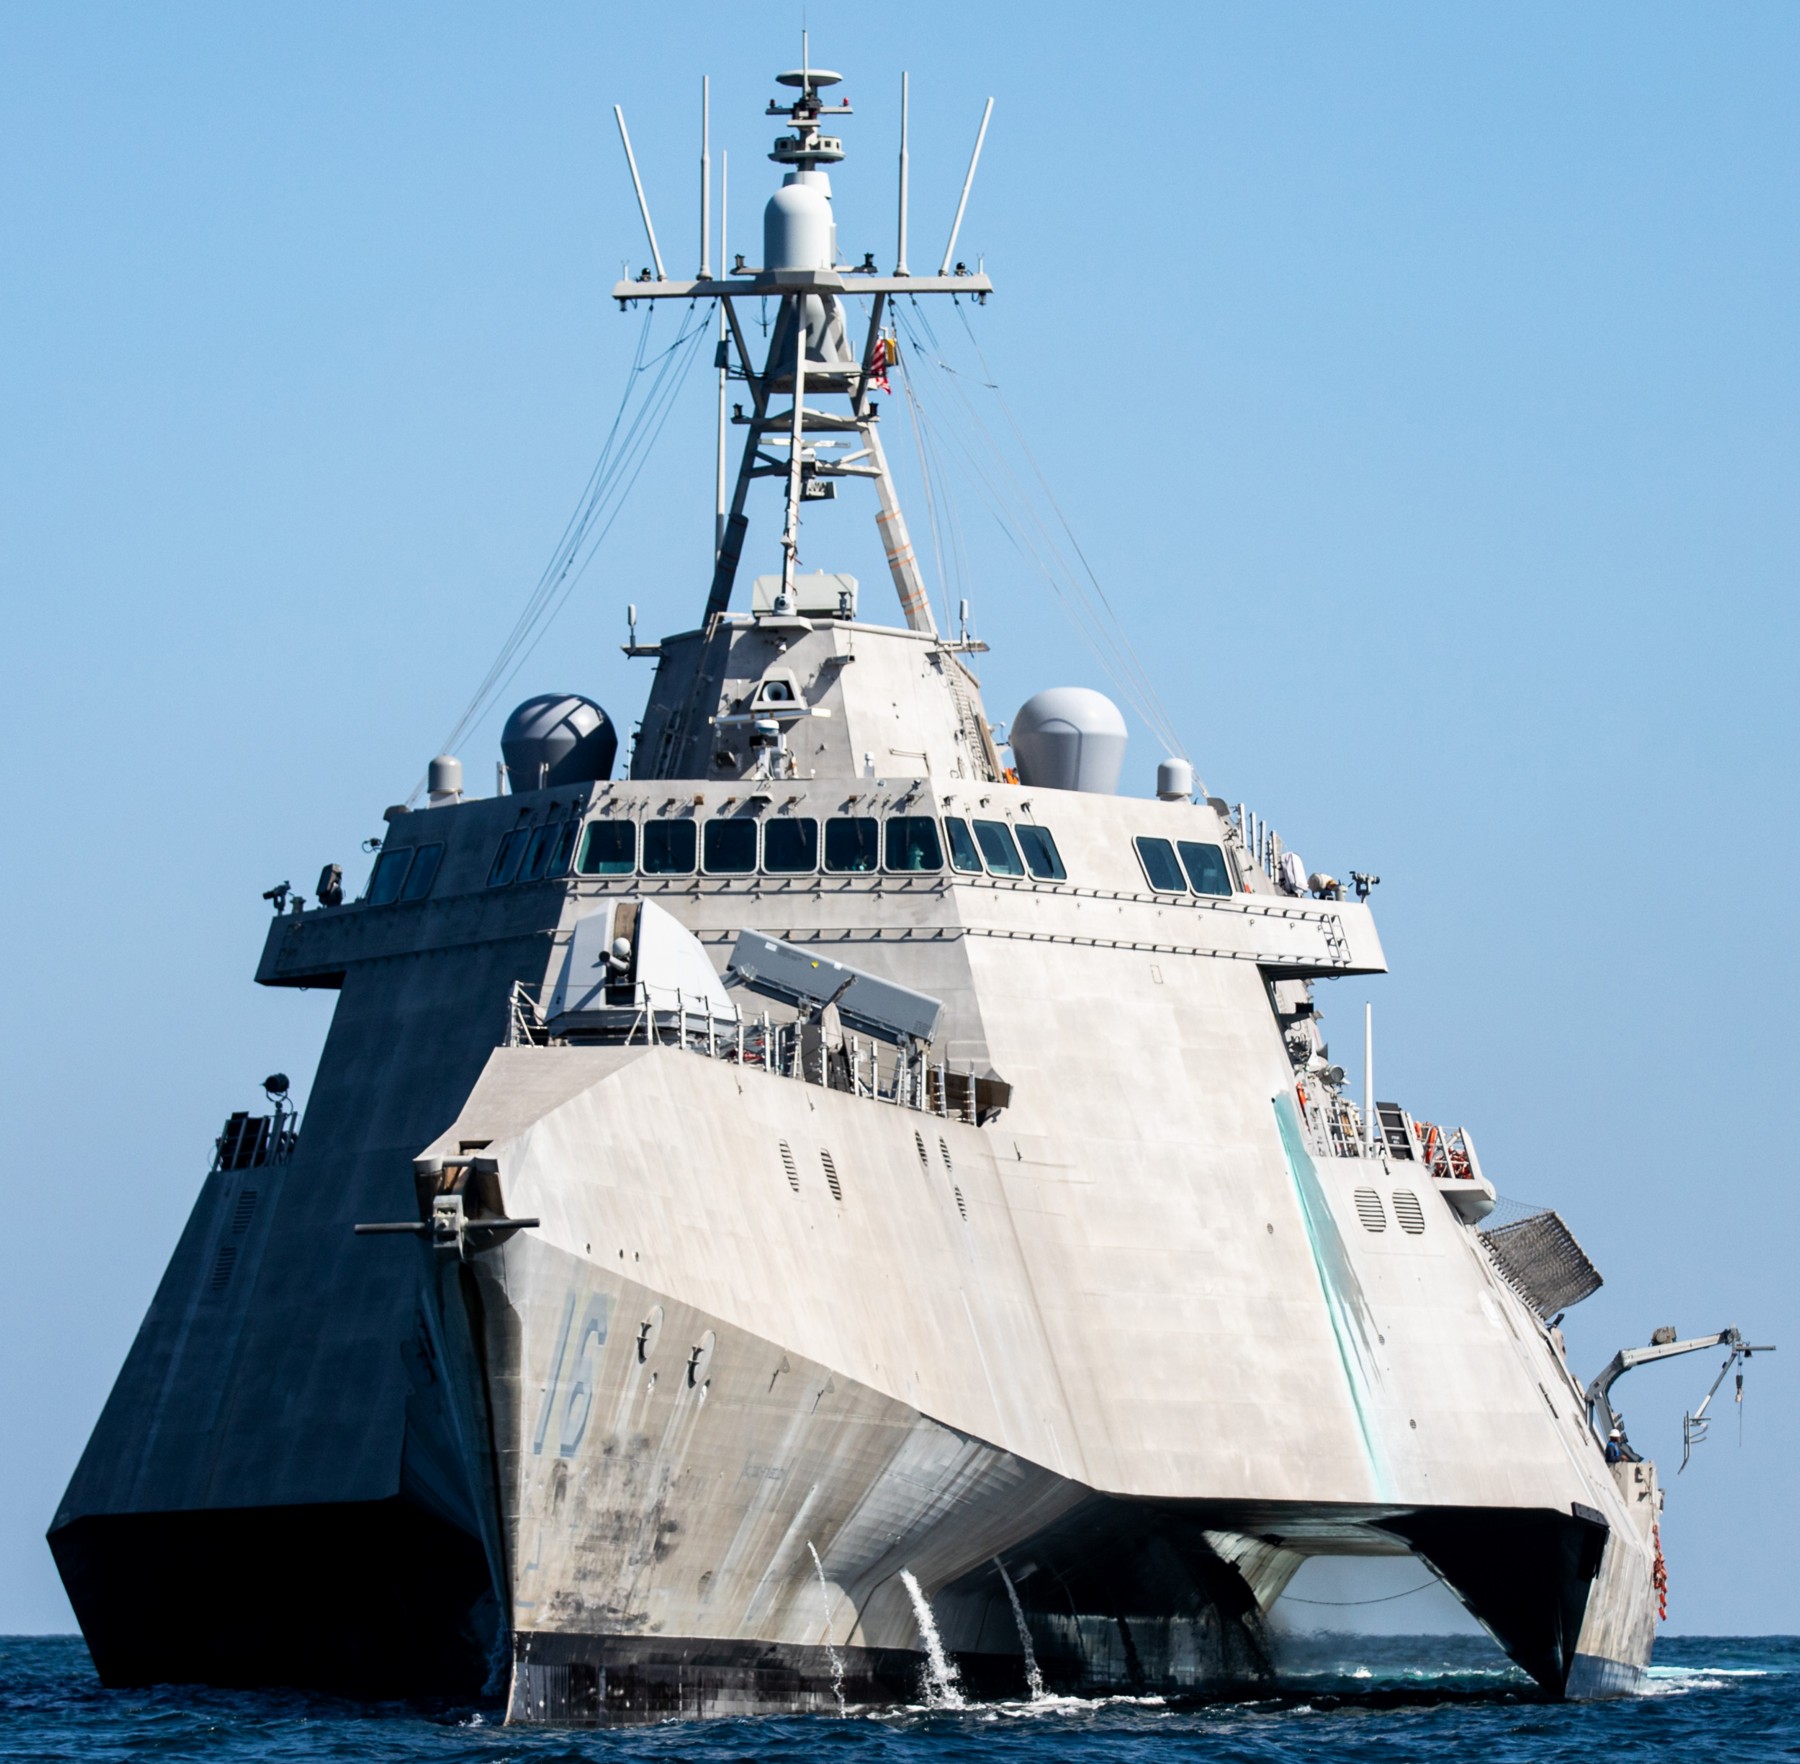 lcs-16 uss tulsa independence class littoral combat ship us navy 54